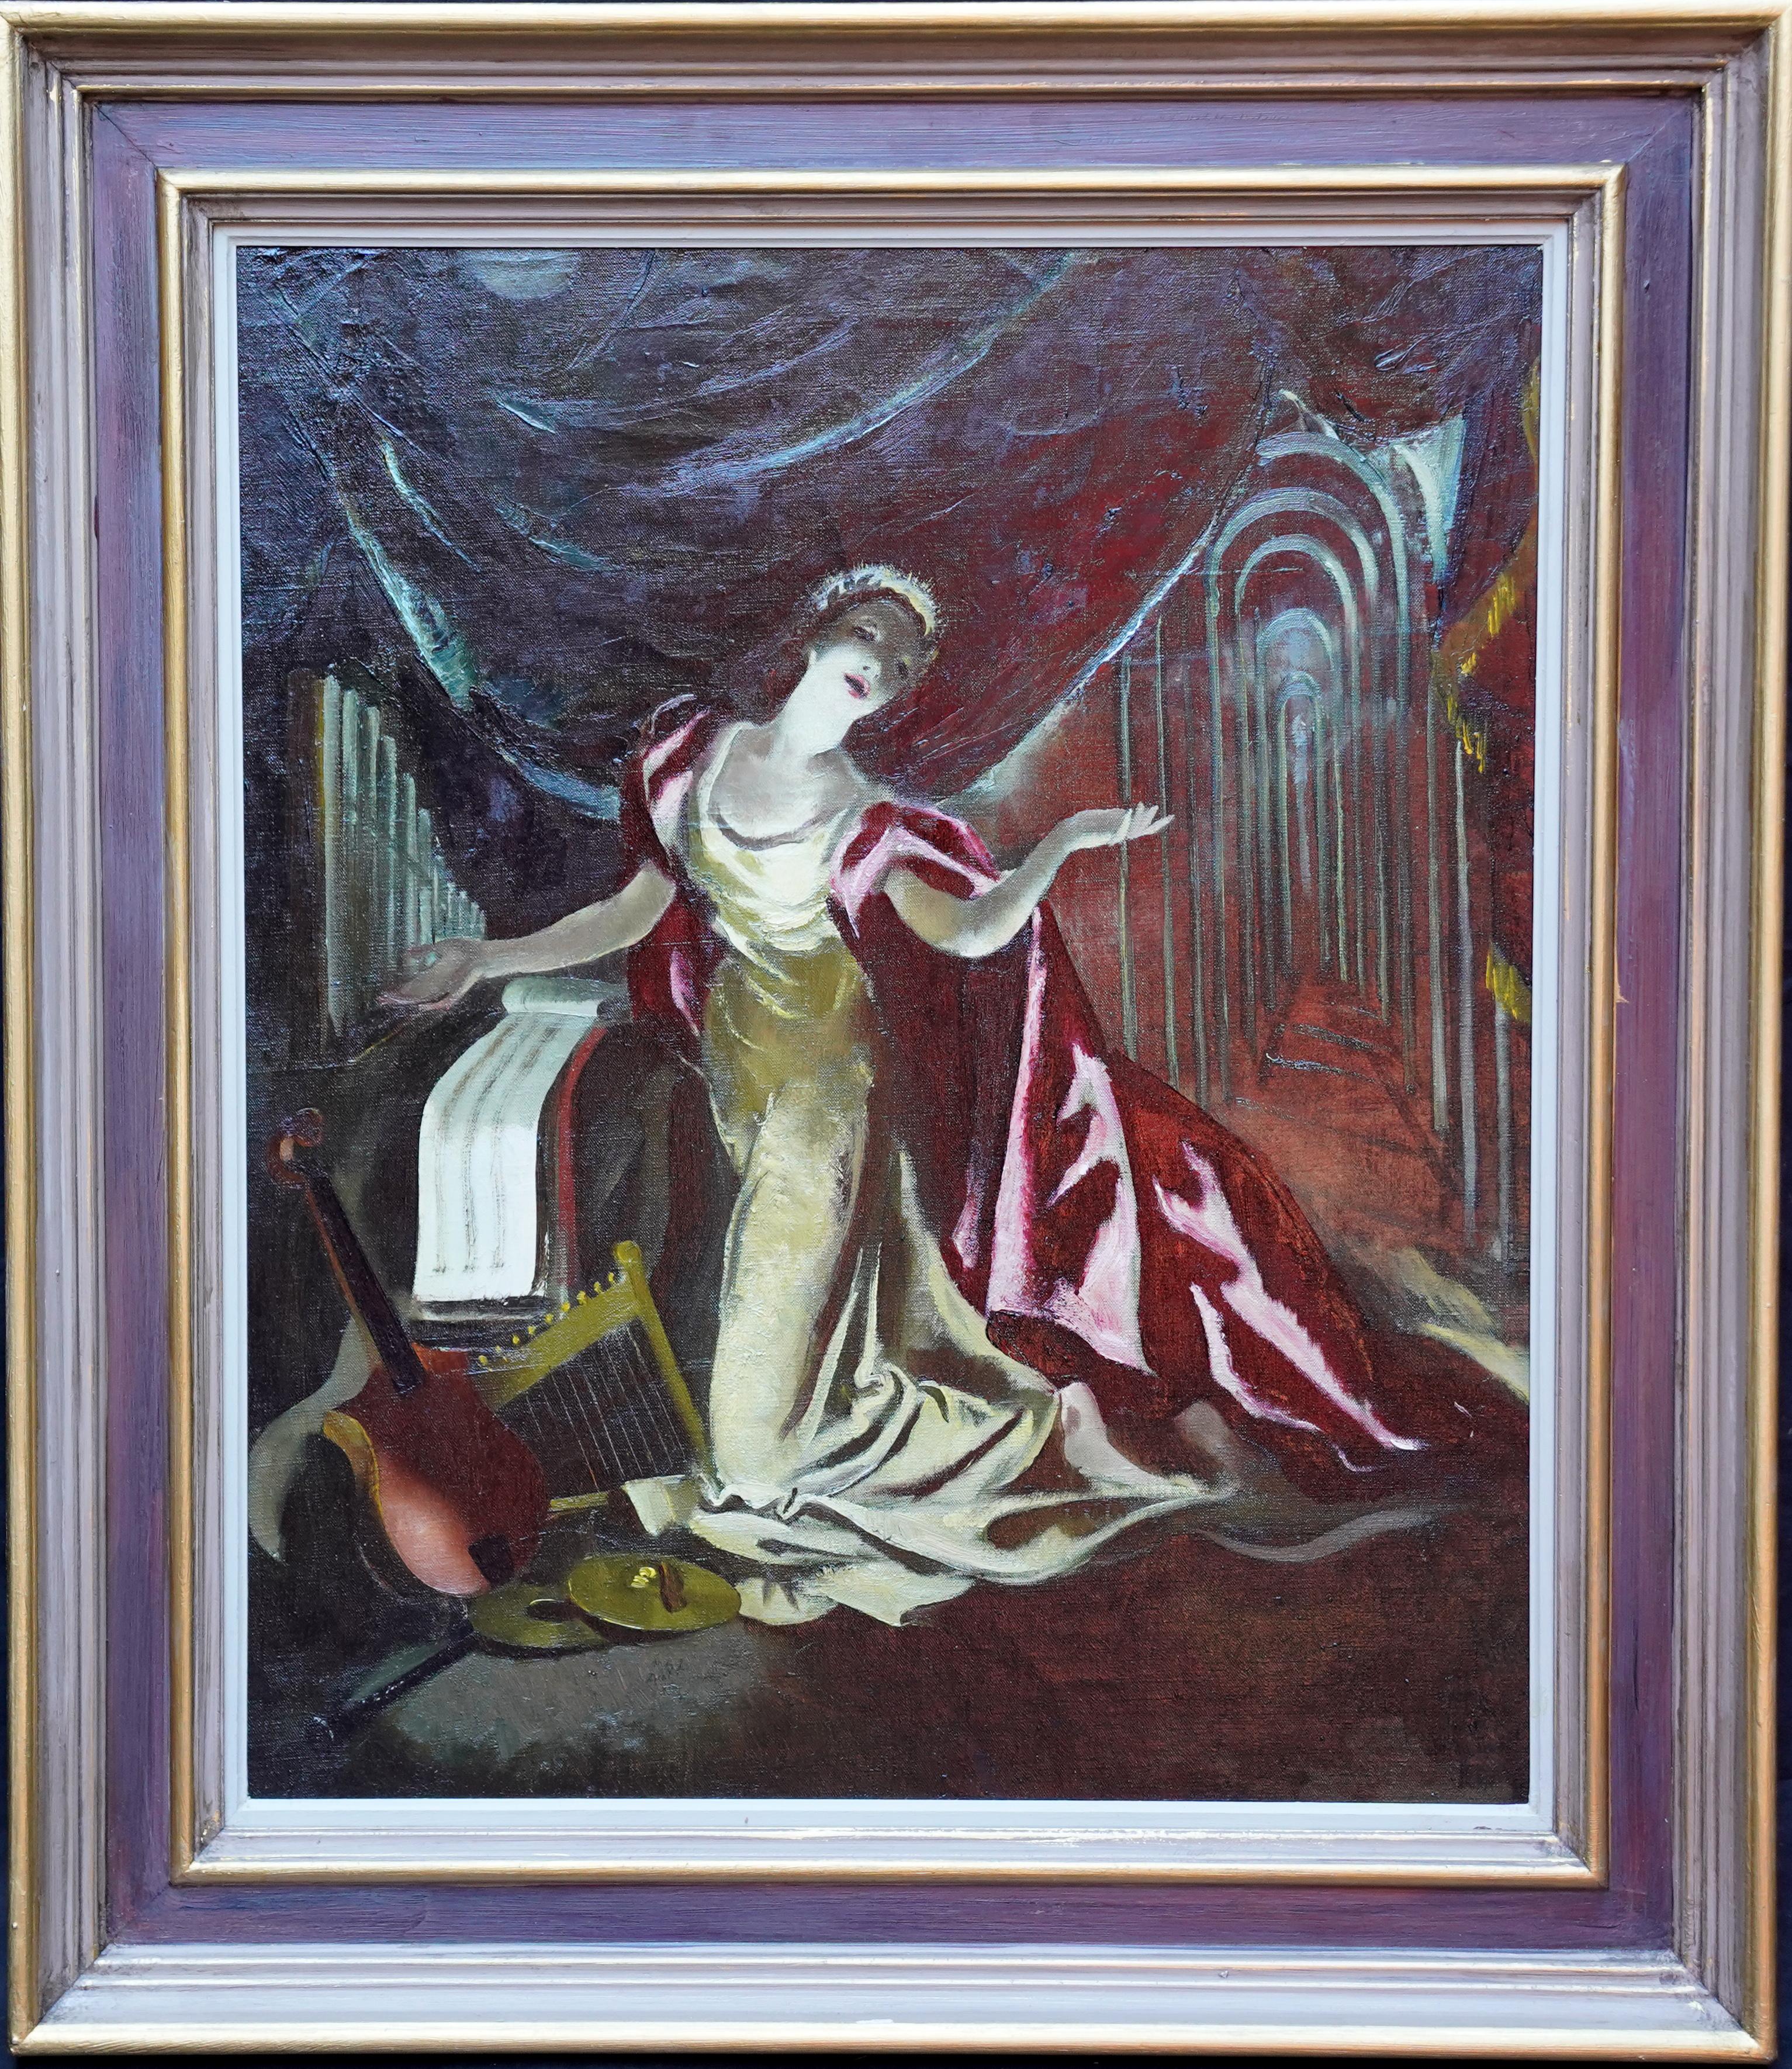 Portrait Painting Doris Zinkeisen - Portrait sur scène - Cape rouge - Peinture à l'huile d'un portrait théâtral écossais des années 60